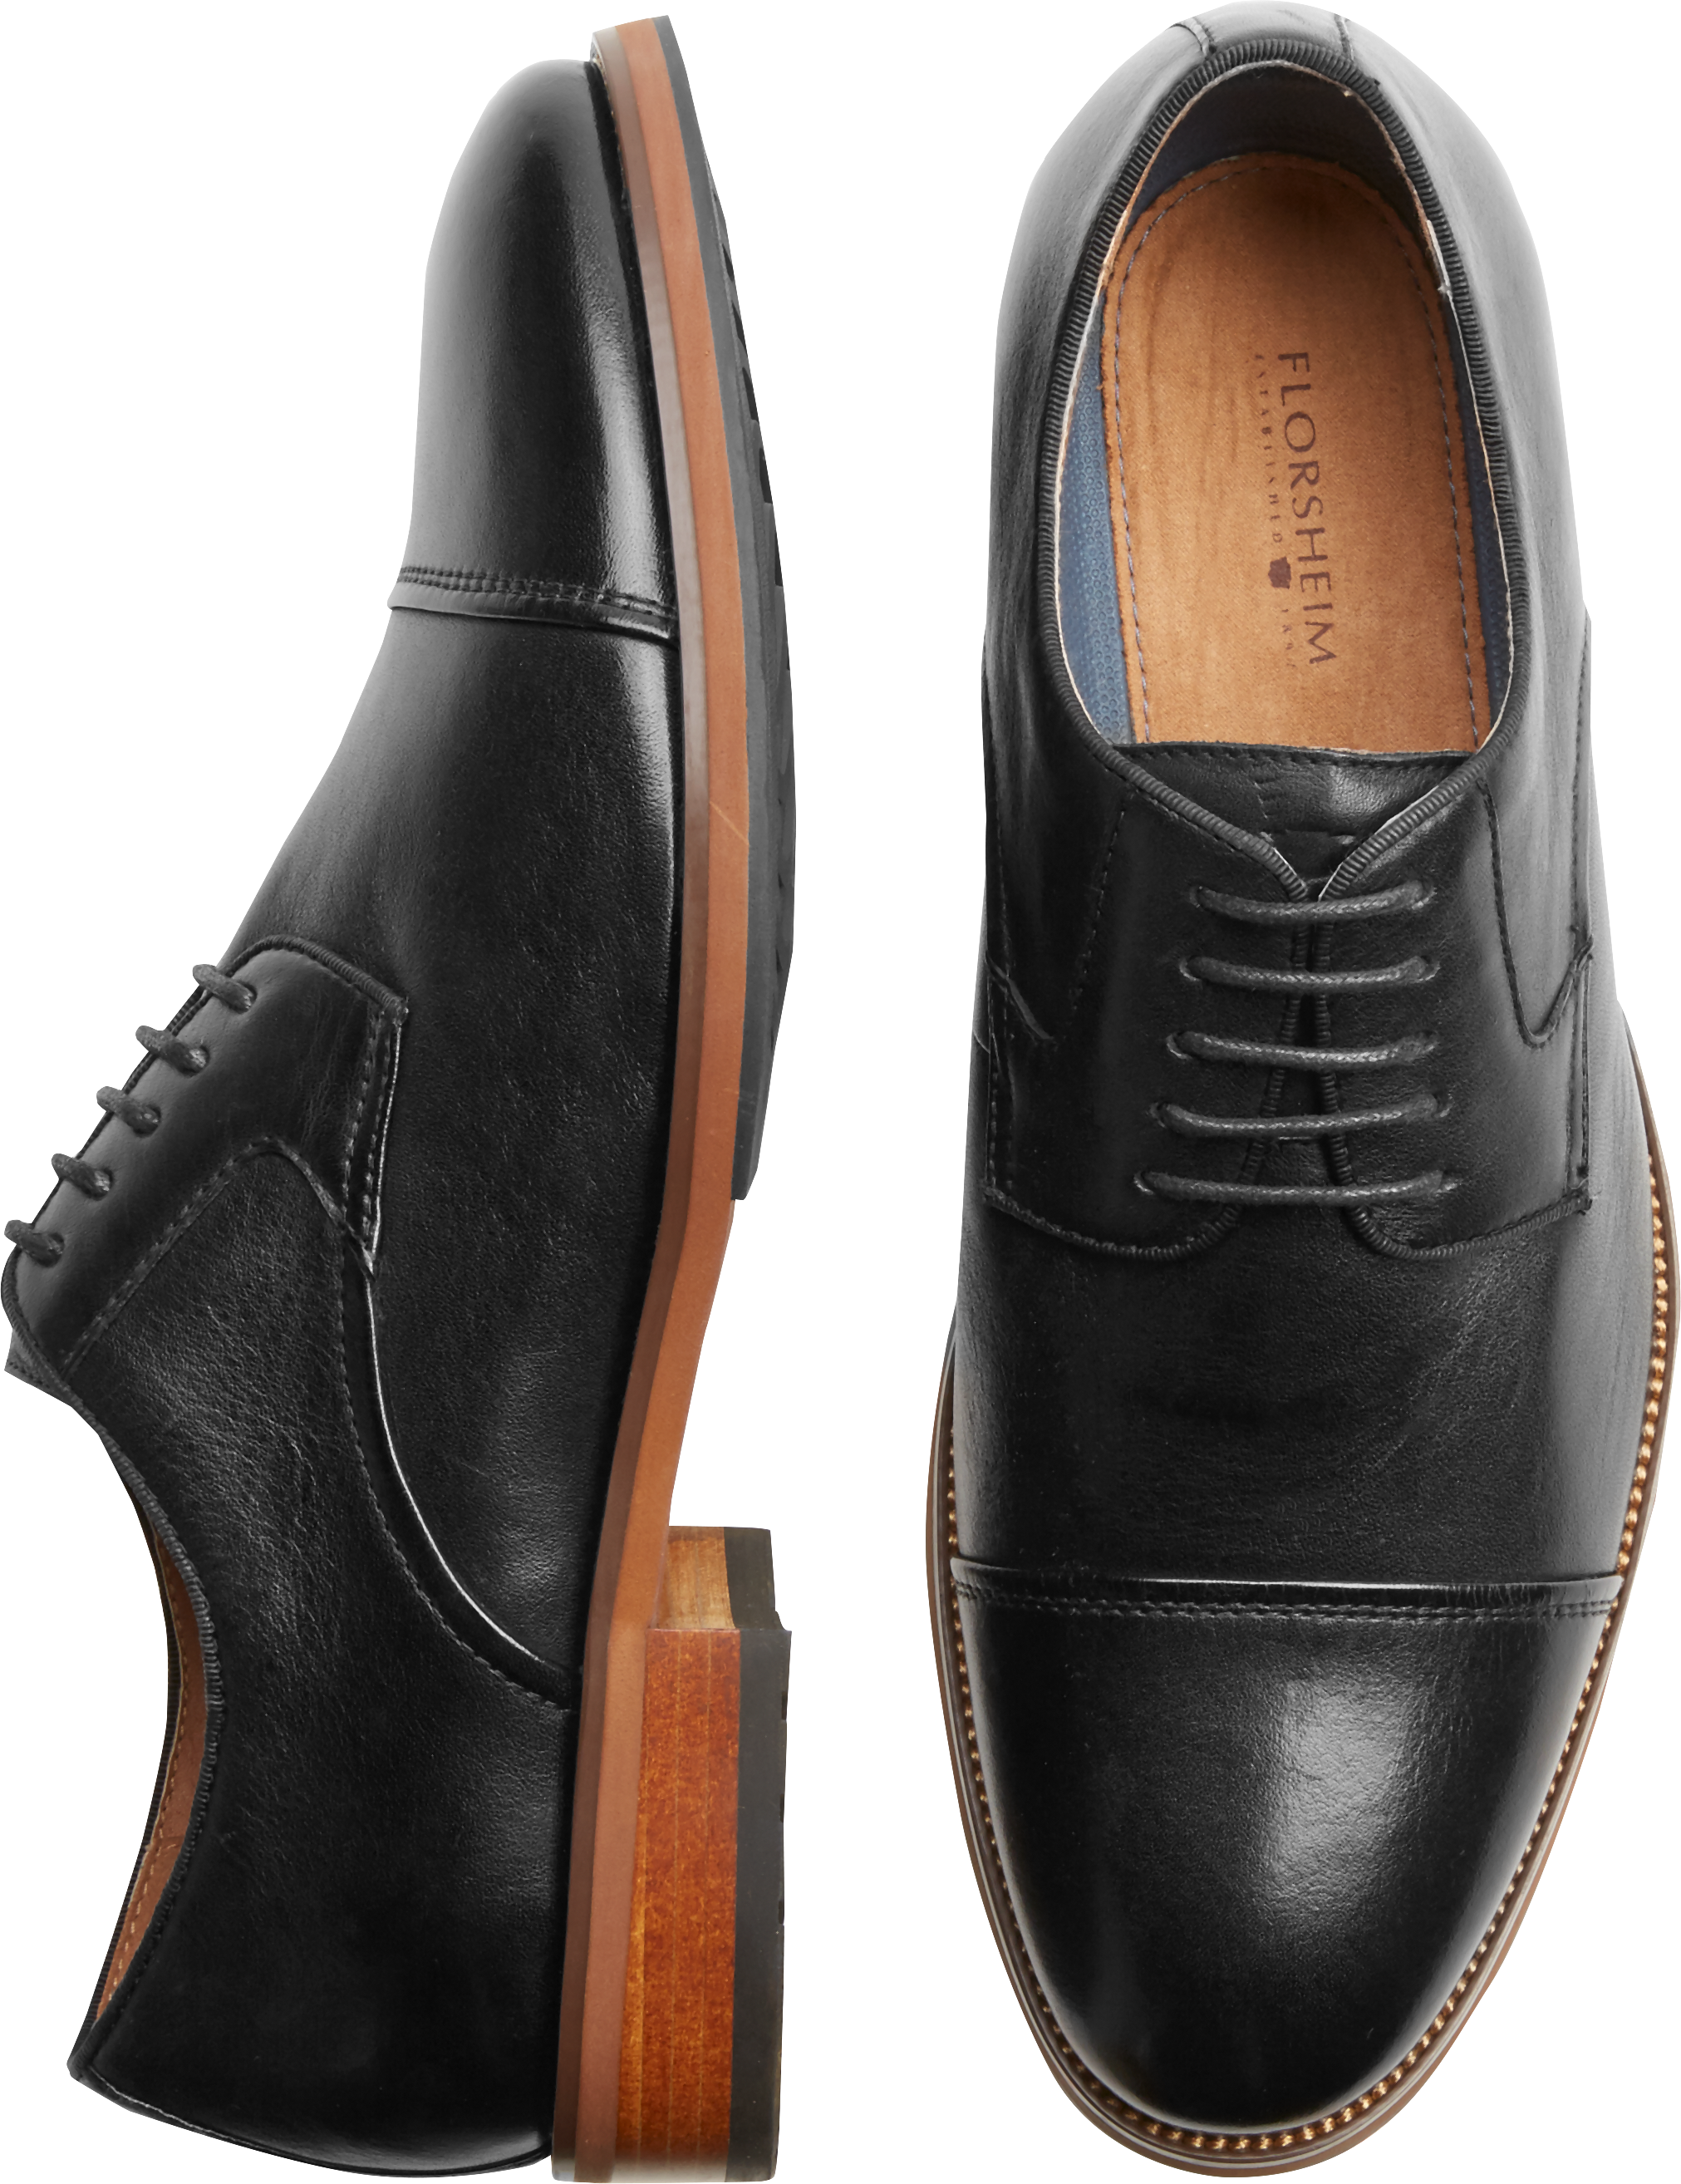 Florsheim Surge Black Cap-Toe Oxfords - Men's Shoes | Men's Wearhouse